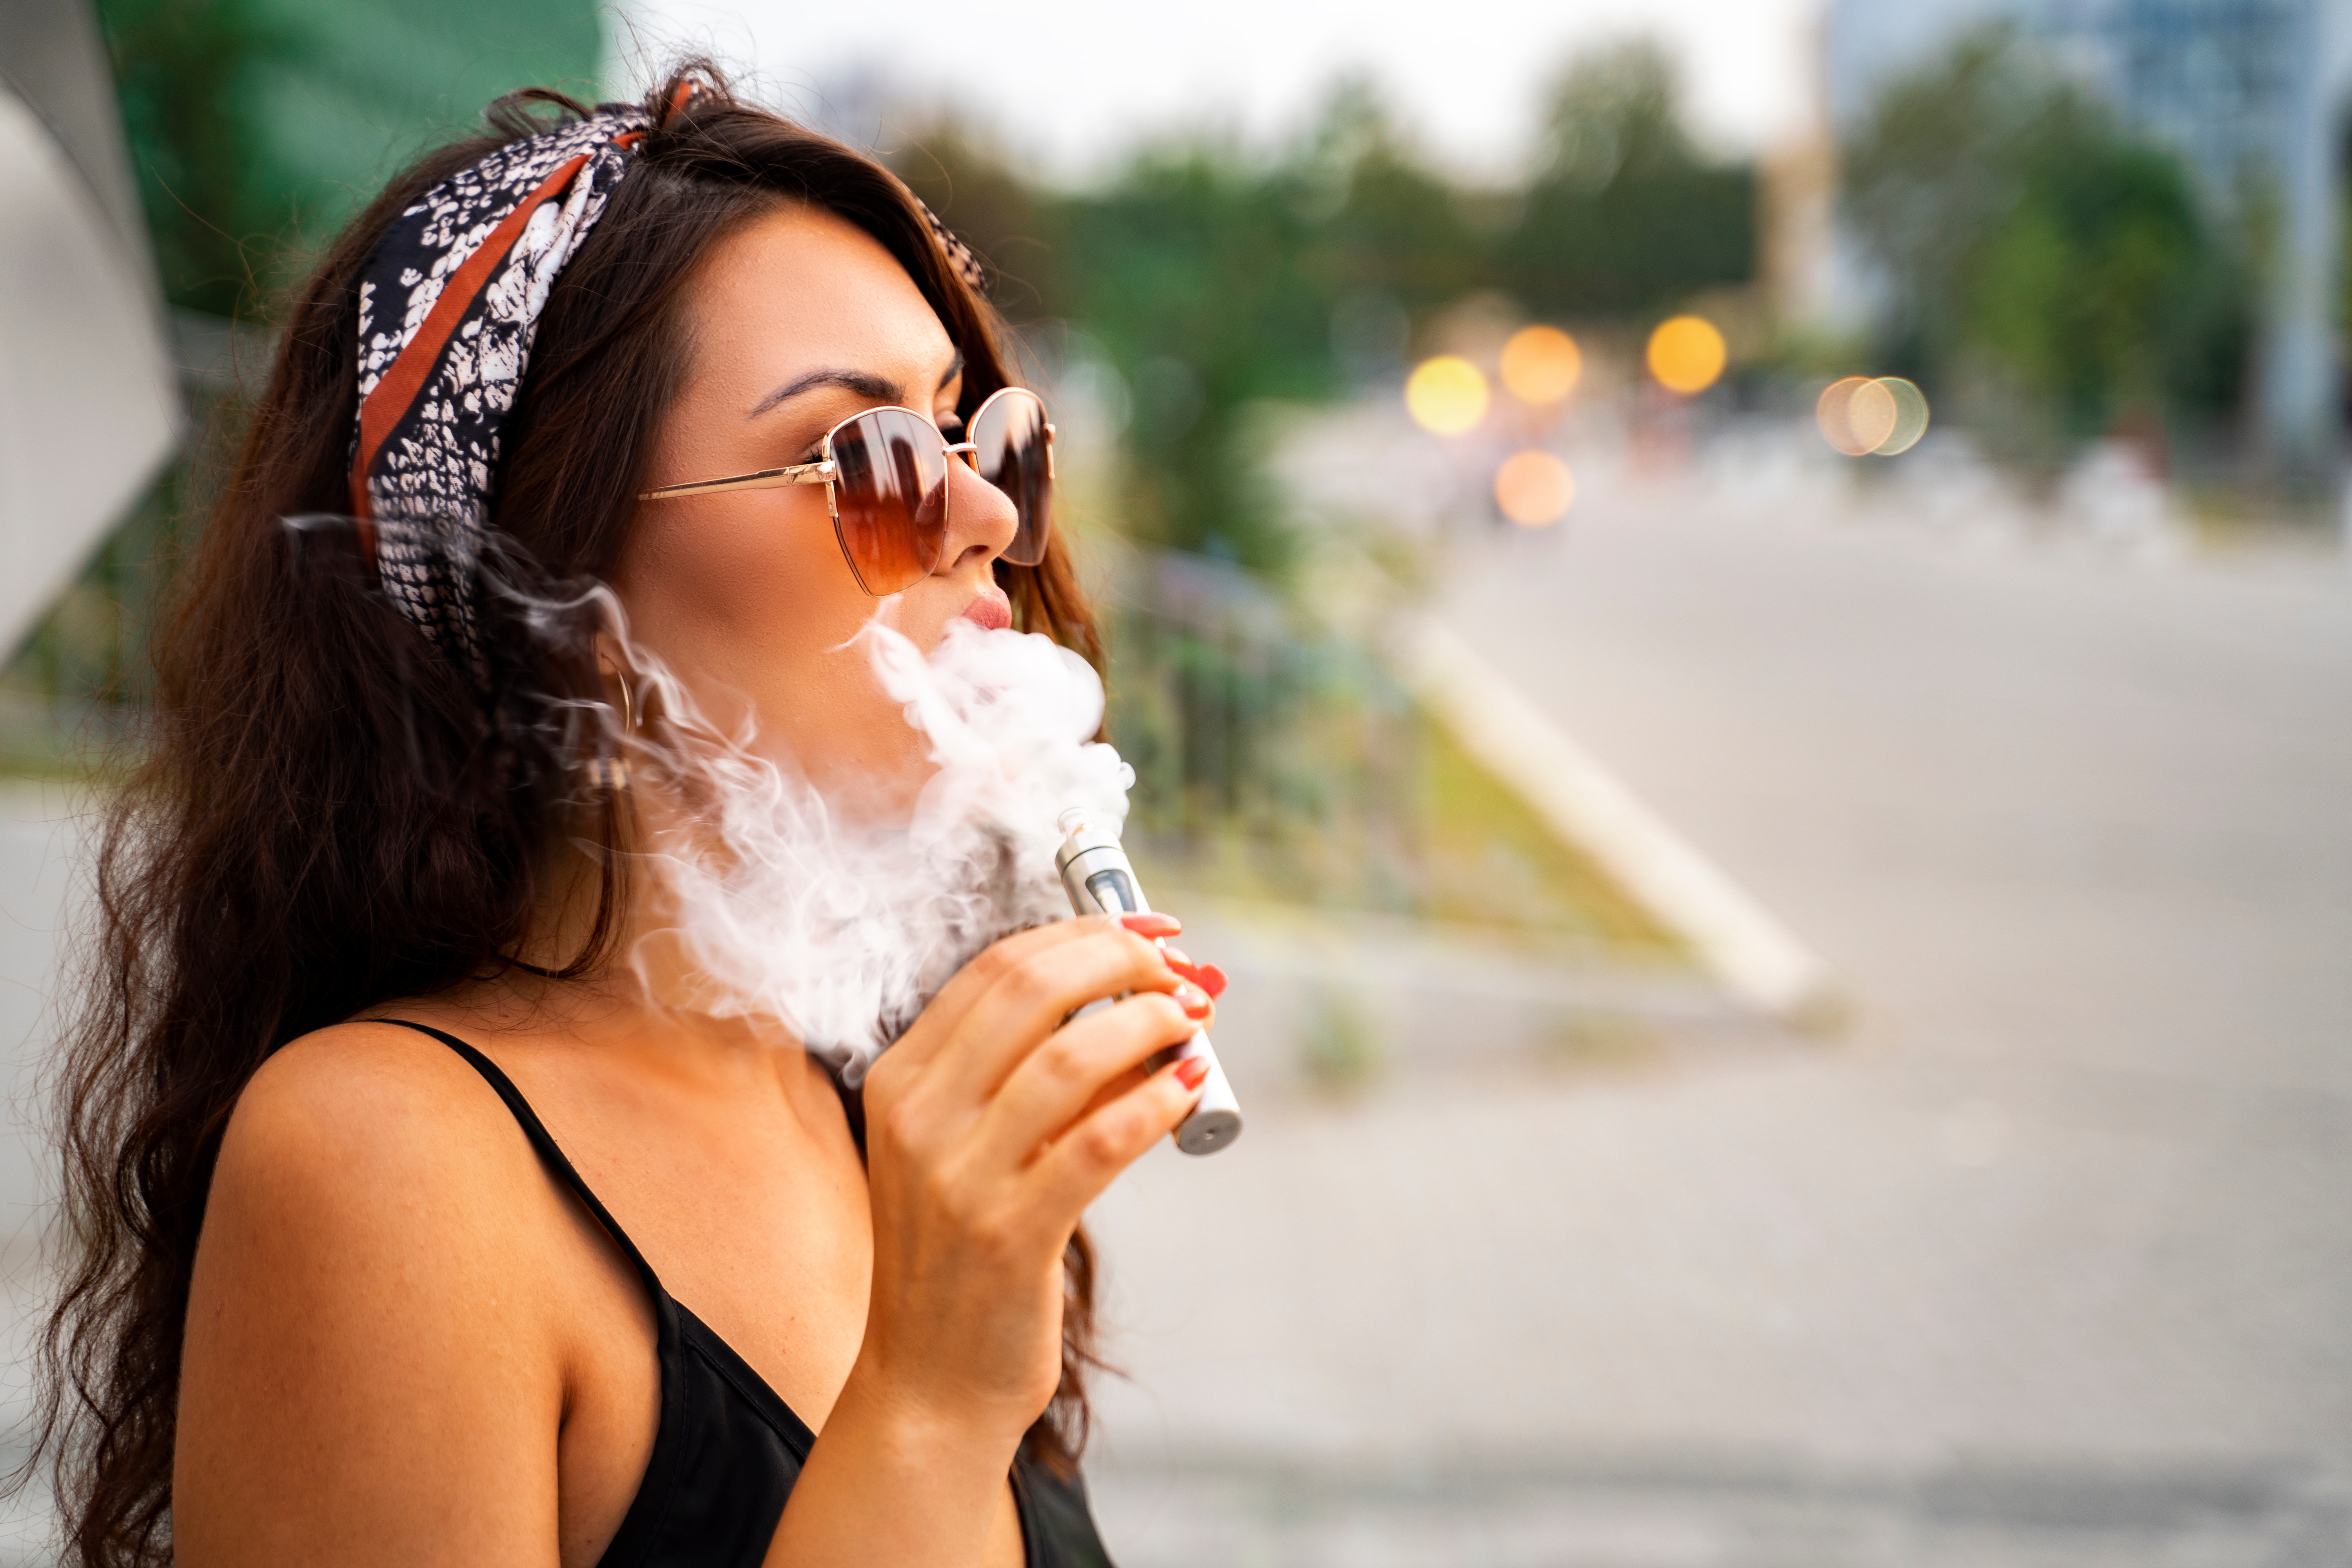 Les jeunes utilisateurs de cigarette électronique présentent un risque plus élevé de bronchite et d’essoufflement (Visuel Adobe Stock 366100234)